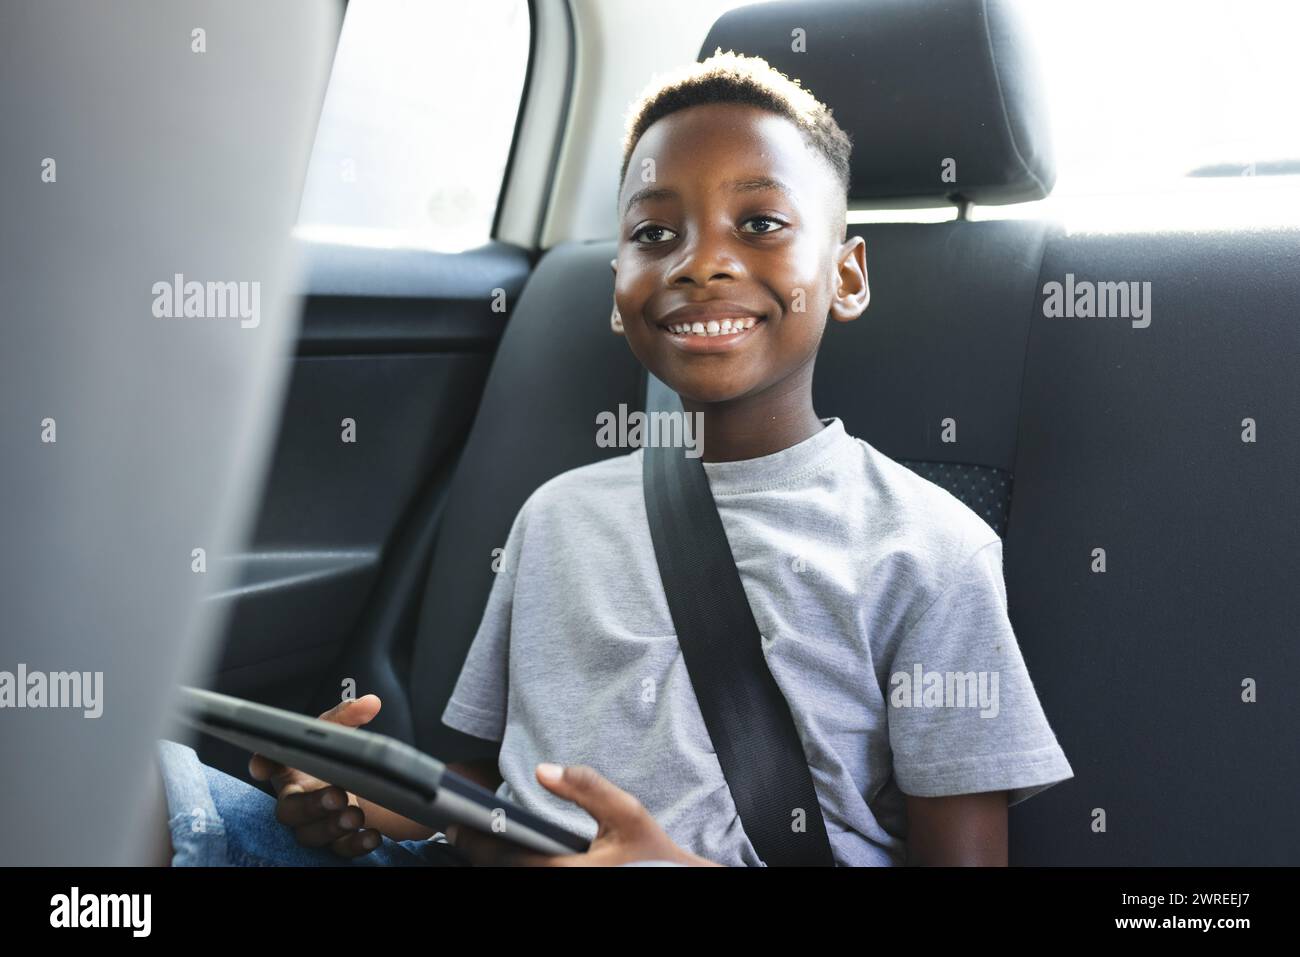 Garçon afro-américain avec une tablette sourit en étant assis dans une voiture Banque D'Images